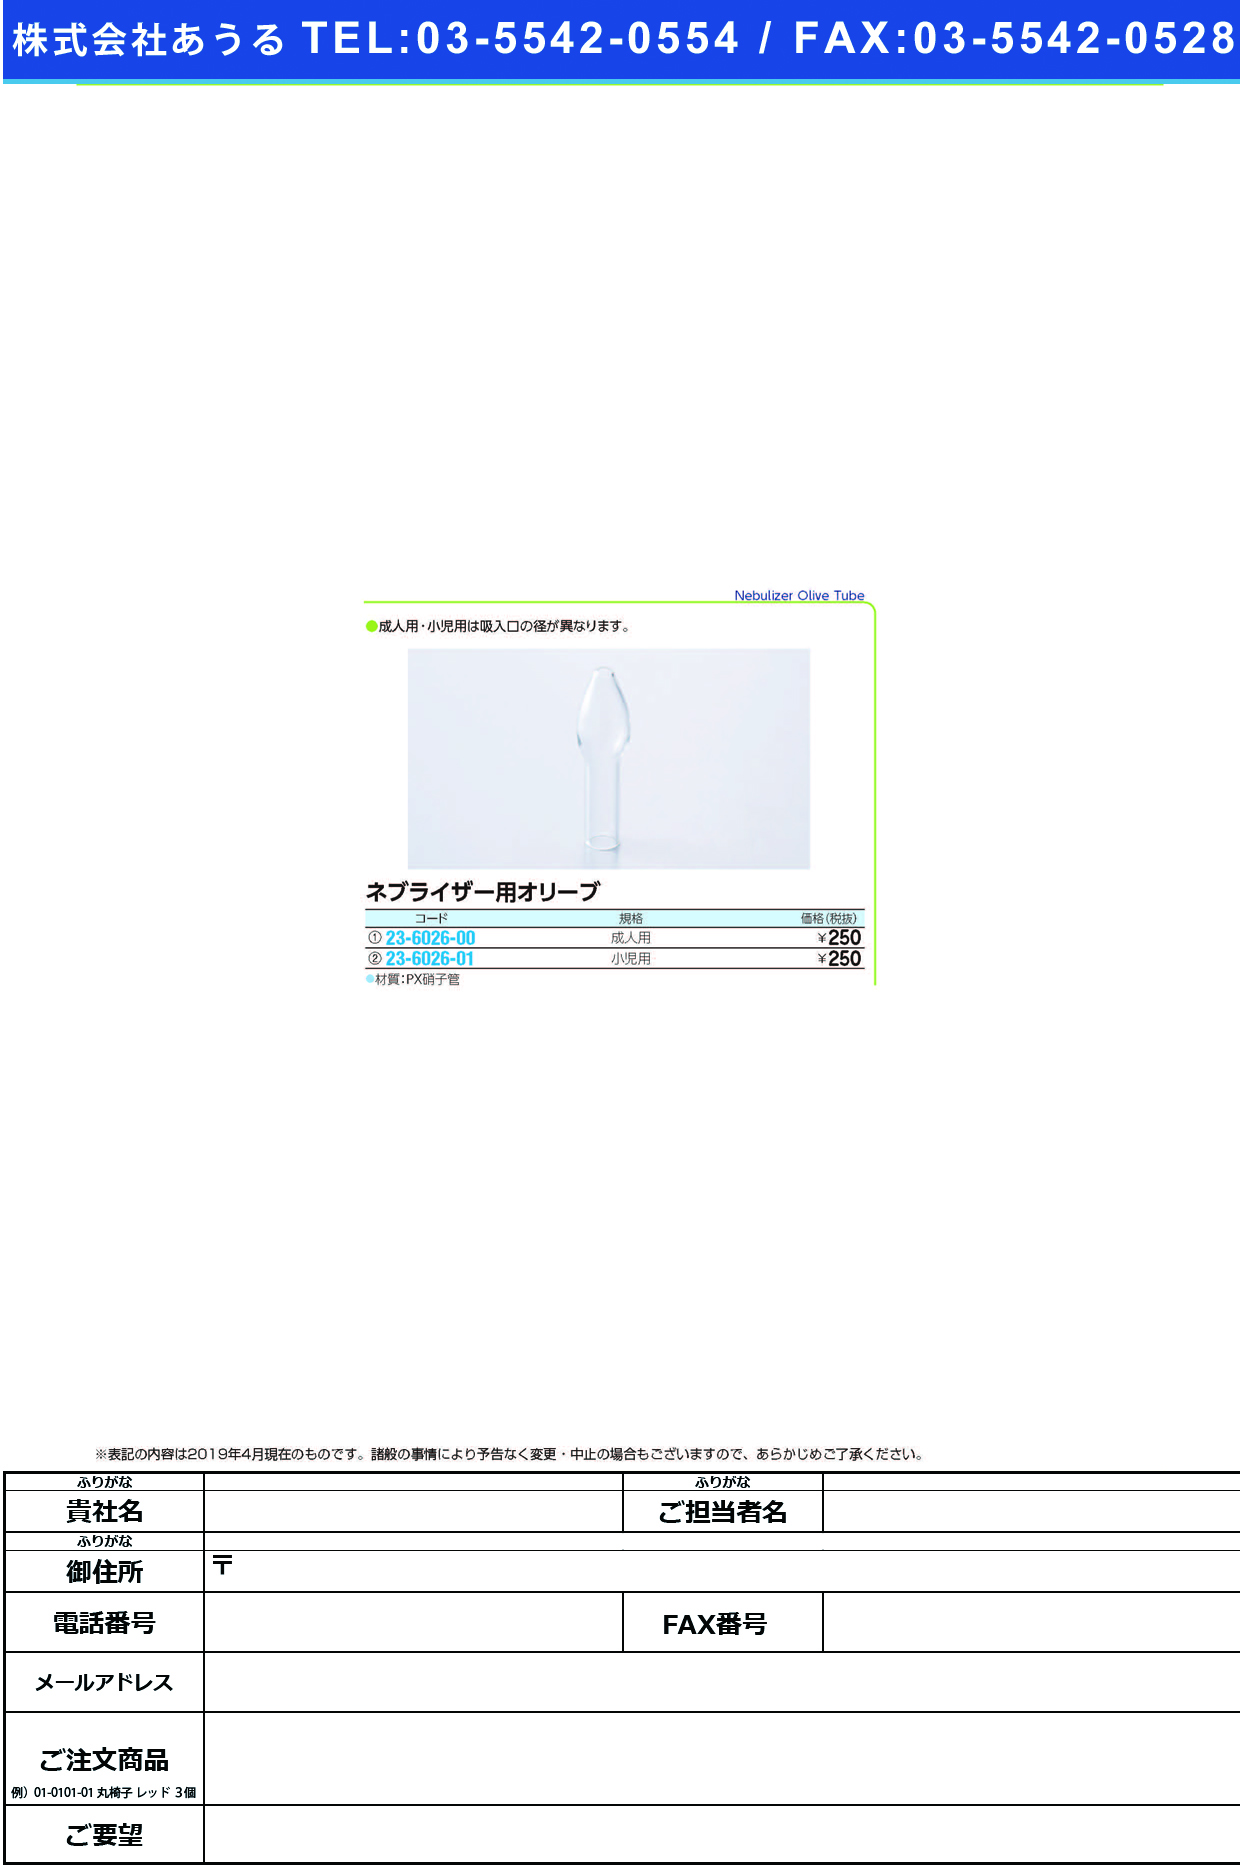 (23-6026-01)ネブライザー用オリーブ（小児用）  ﾈﾌﾞﾗｲｻﾞｰﾖｳｵﾘｰﾌﾞｼｮｳﾆ【1個単位】【2019年カタログ商品】